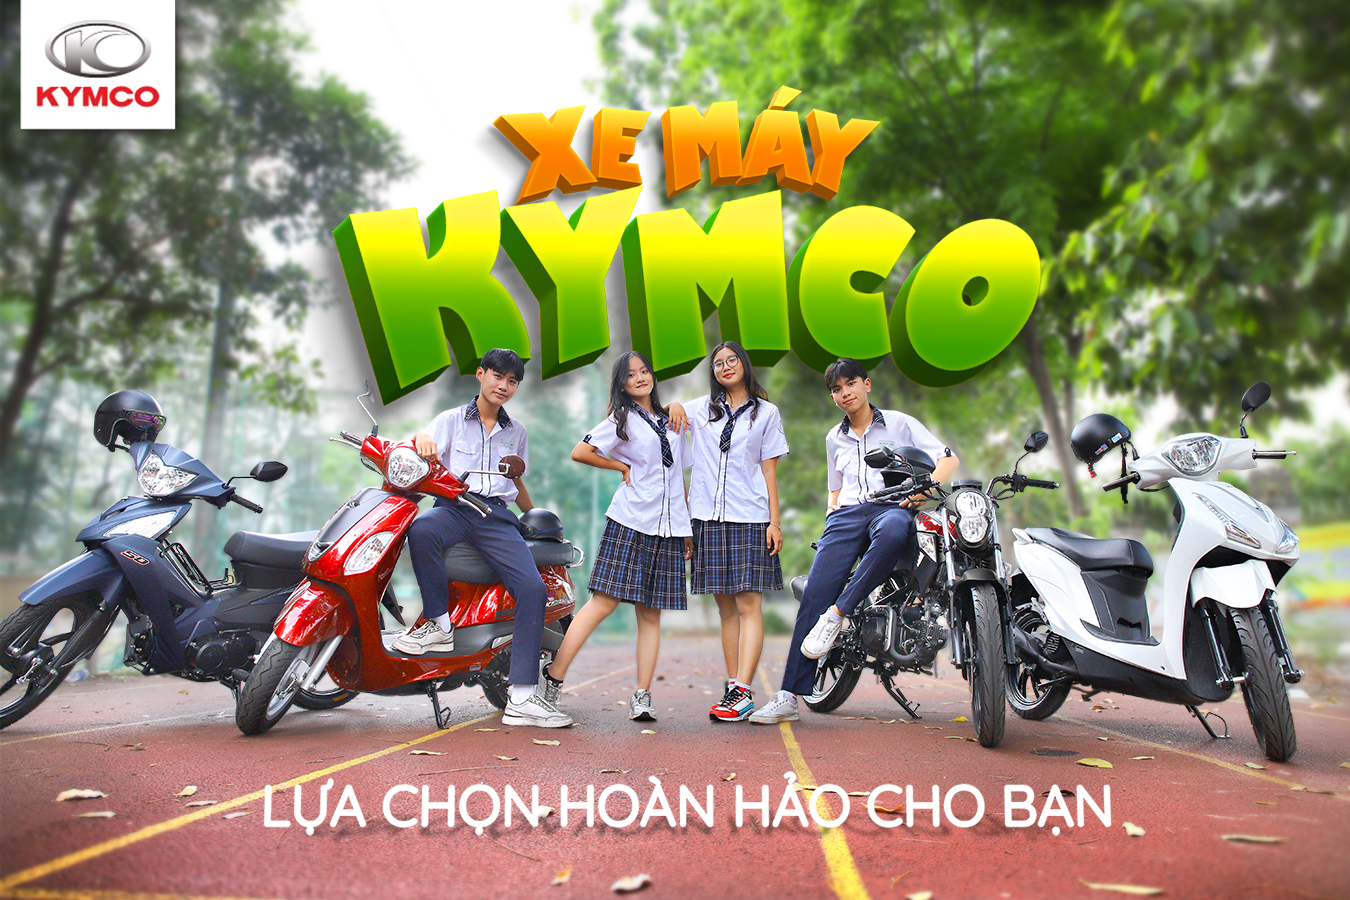 Các dòng xe máy 50cc Kymco đảm bảo chất lượng phù hợp cho hầu hết lứa tuổi học sinh, sinh viên 